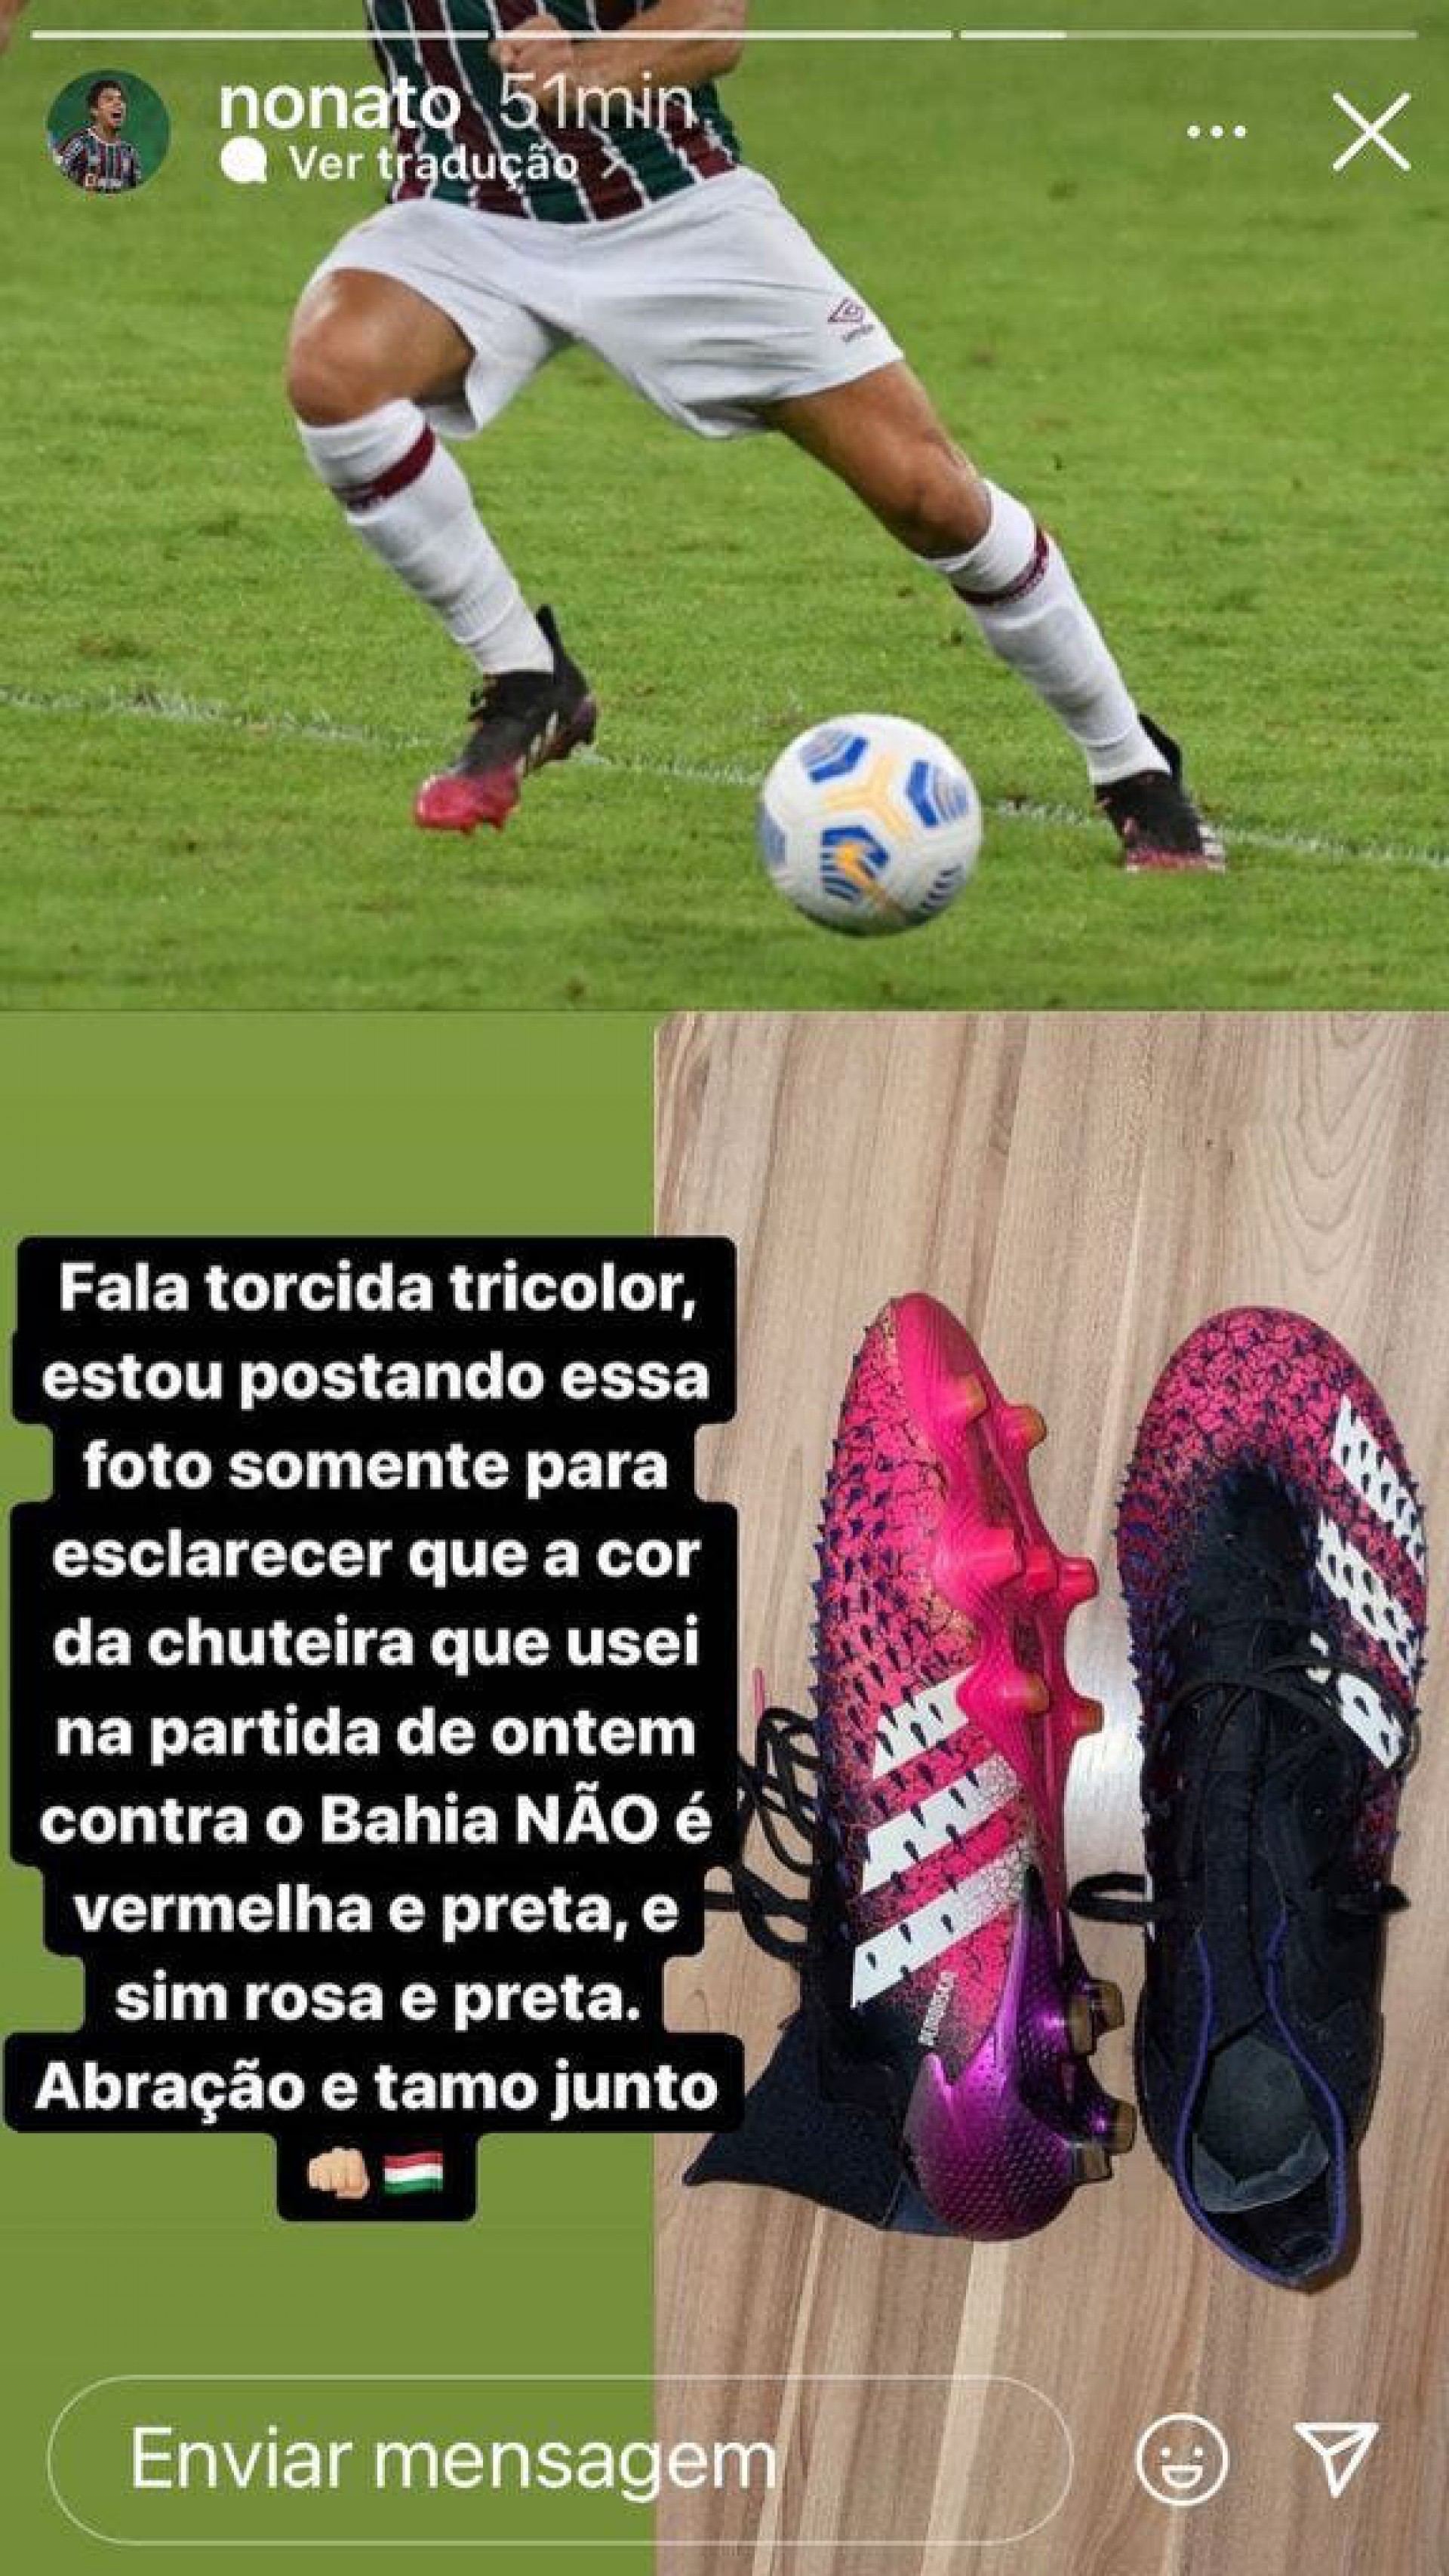 Nonato esclareceu que não utilizou chuteira rubro-negra em jogo do Fluminense - Reprodução